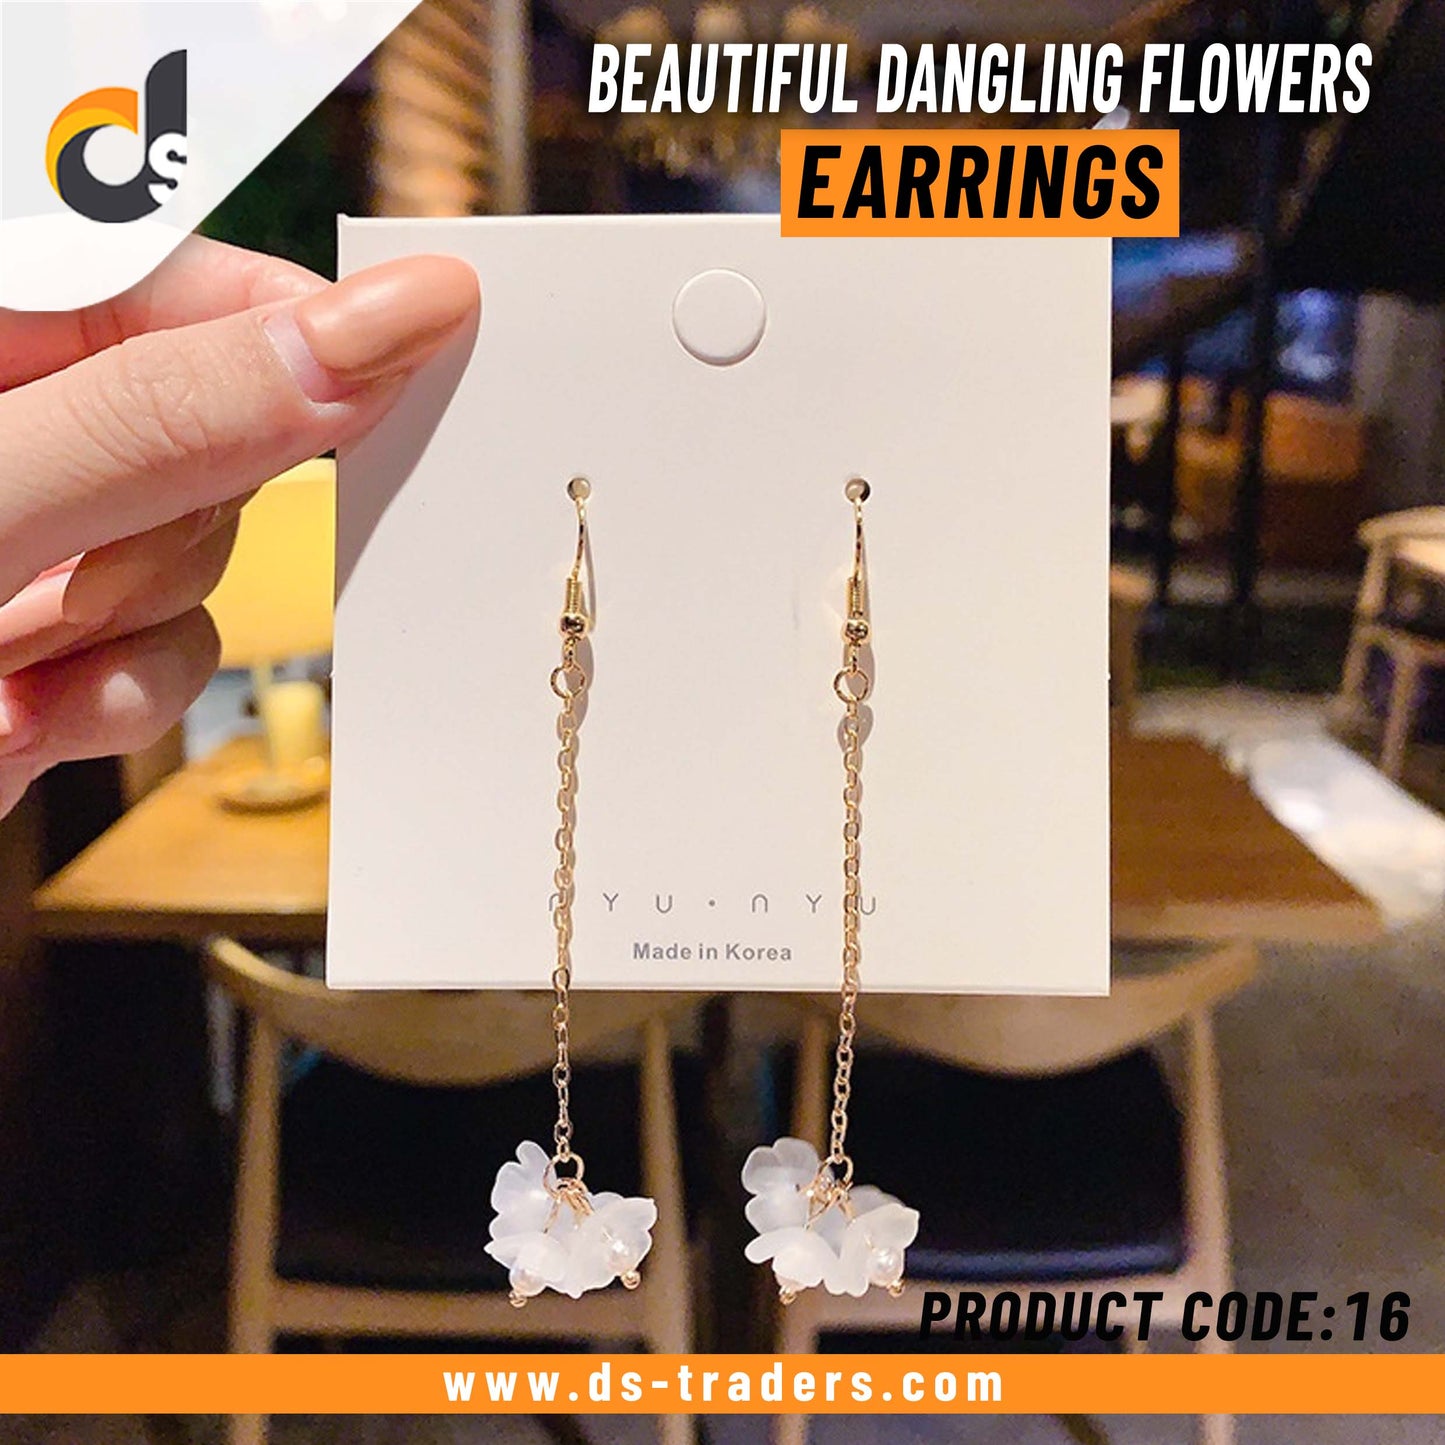 Beautiful Dangling Flowers Earrings